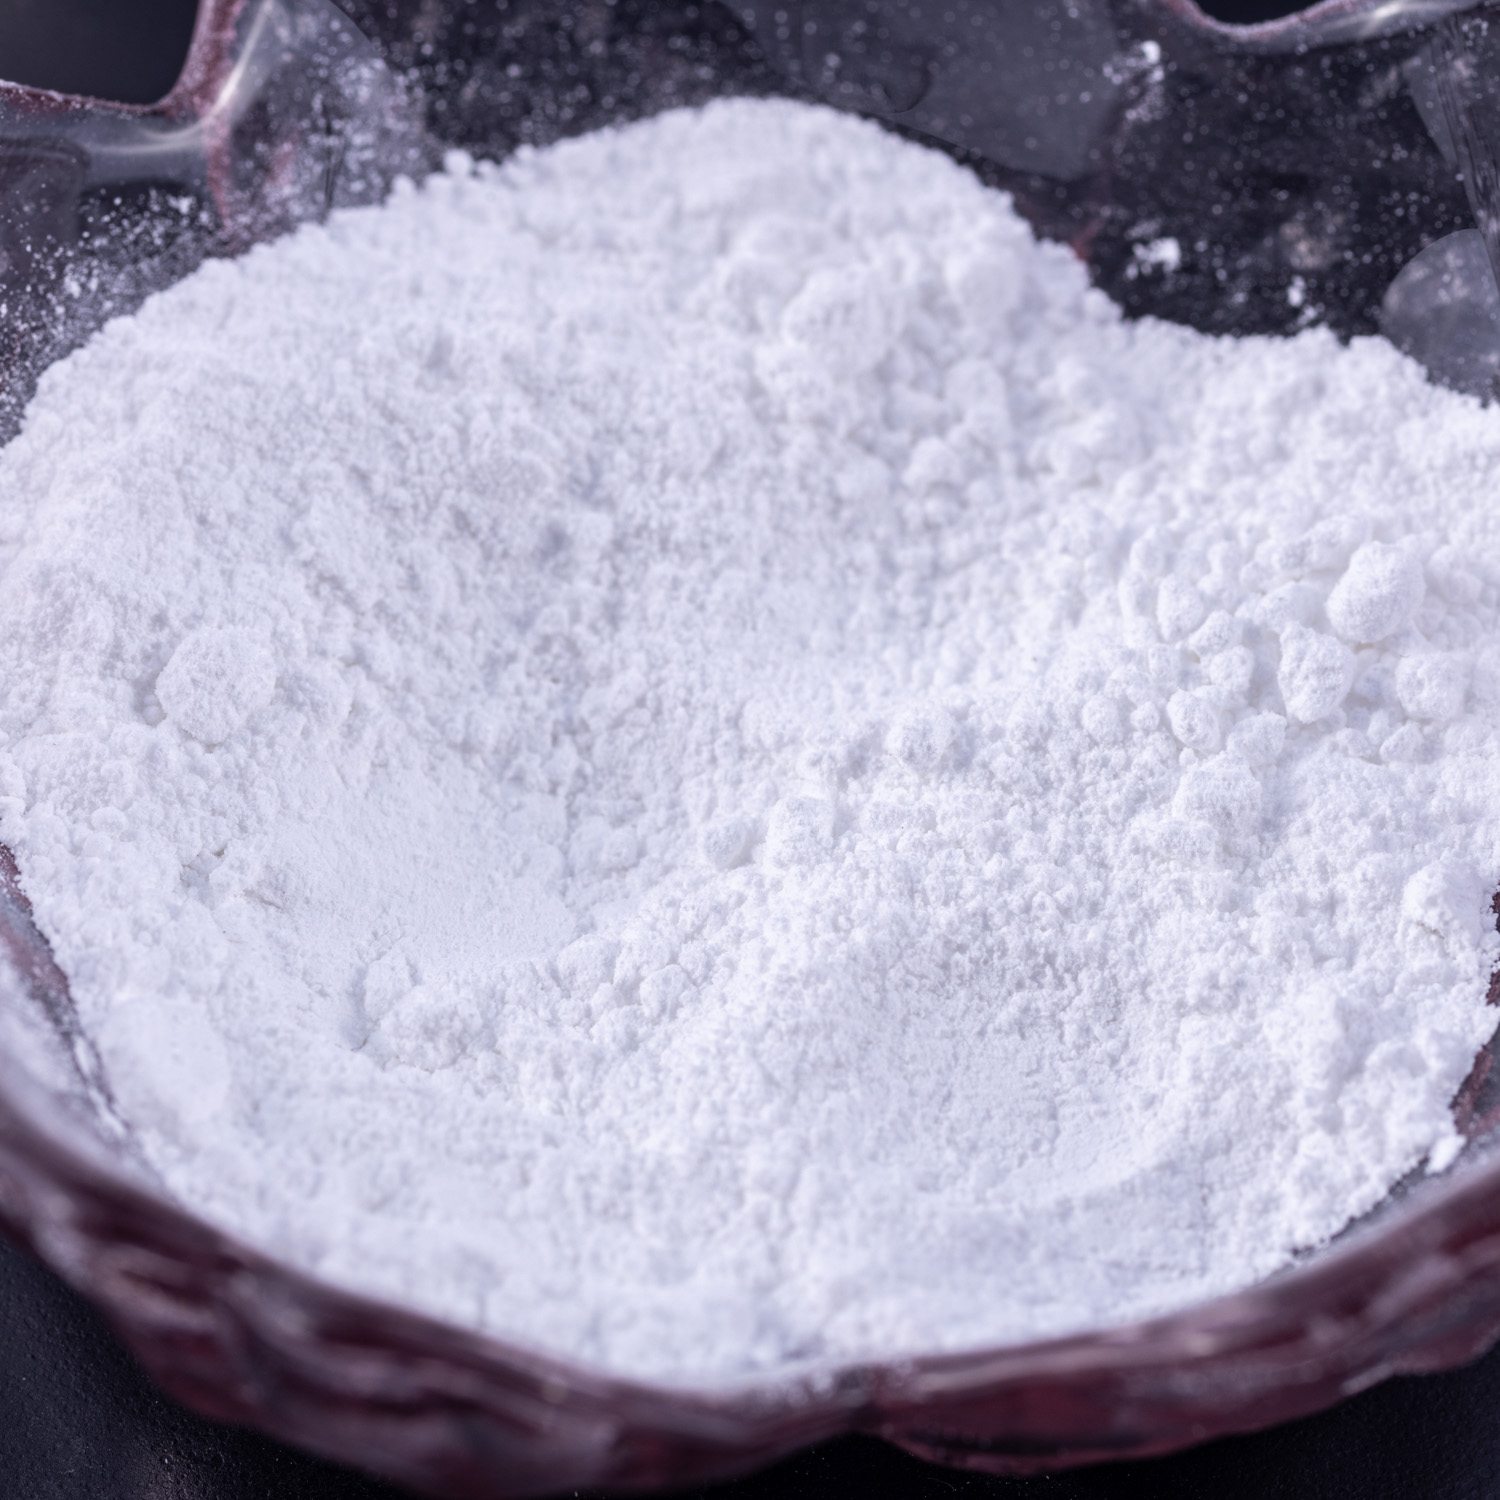 Polvere di propionato di sodio per conservanti alimentari 137-40-6 E281